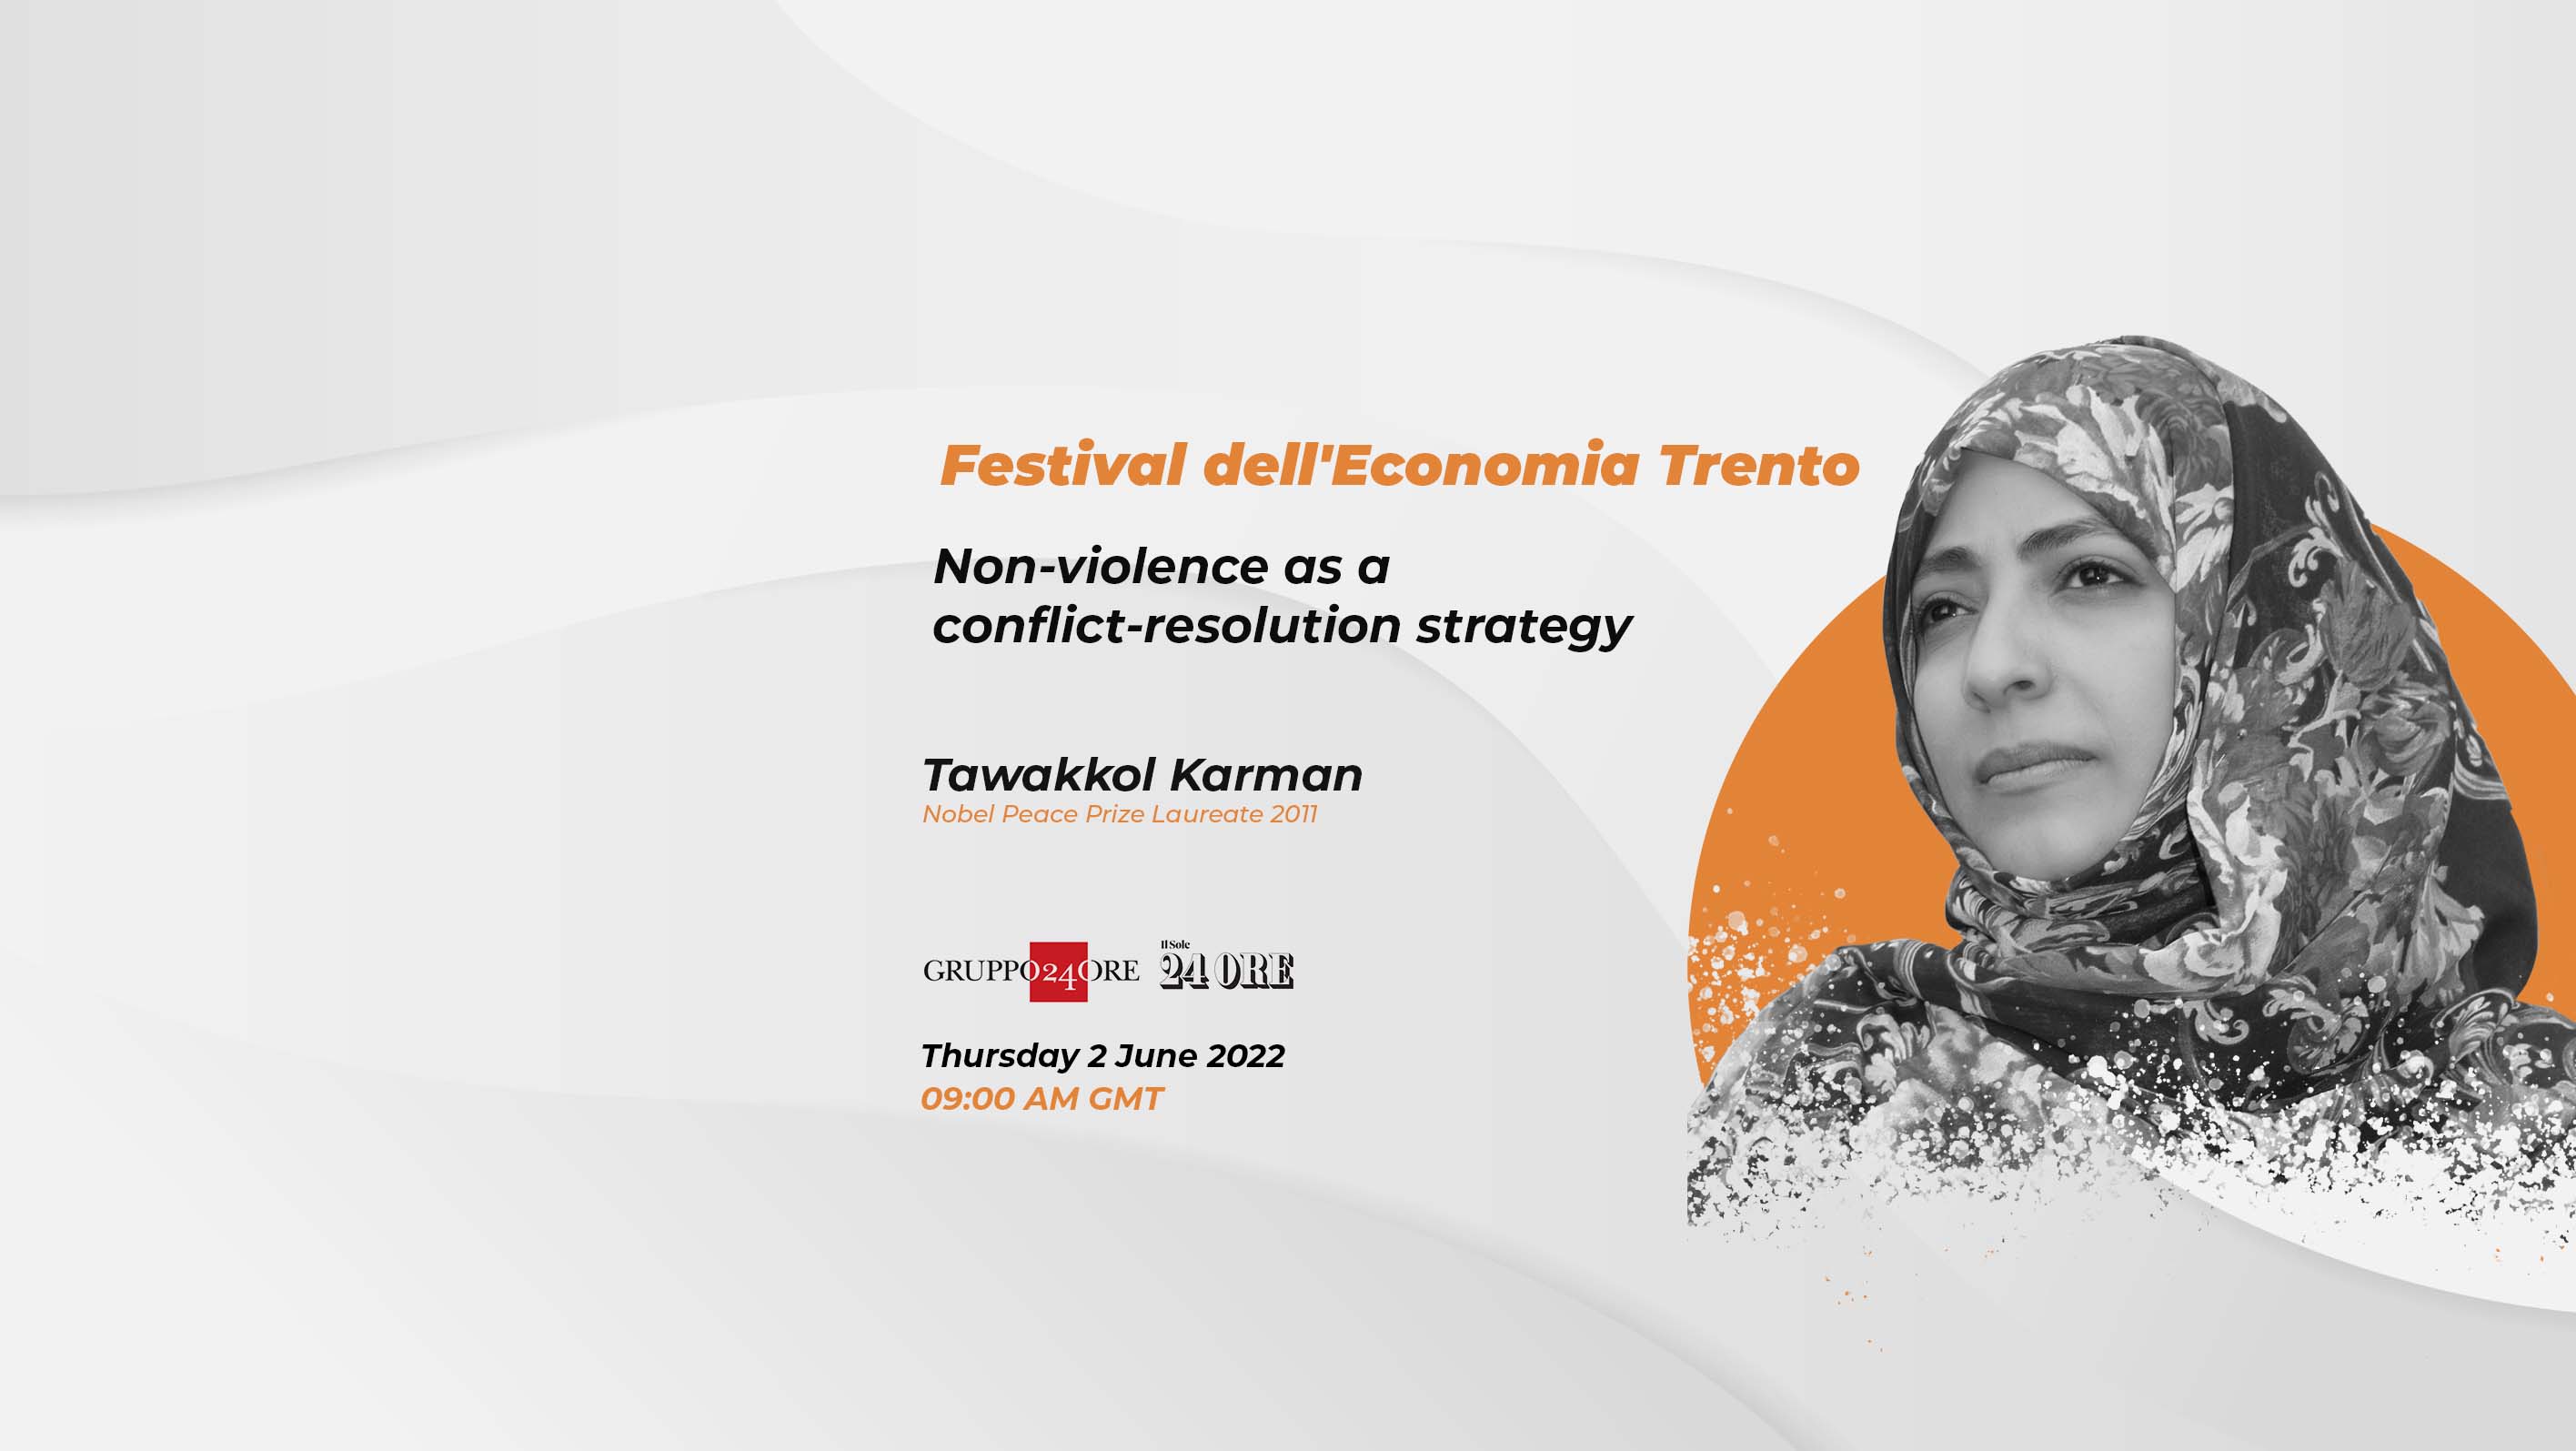 Tawakkol Karman participates in Festival dell'Economia in Italy